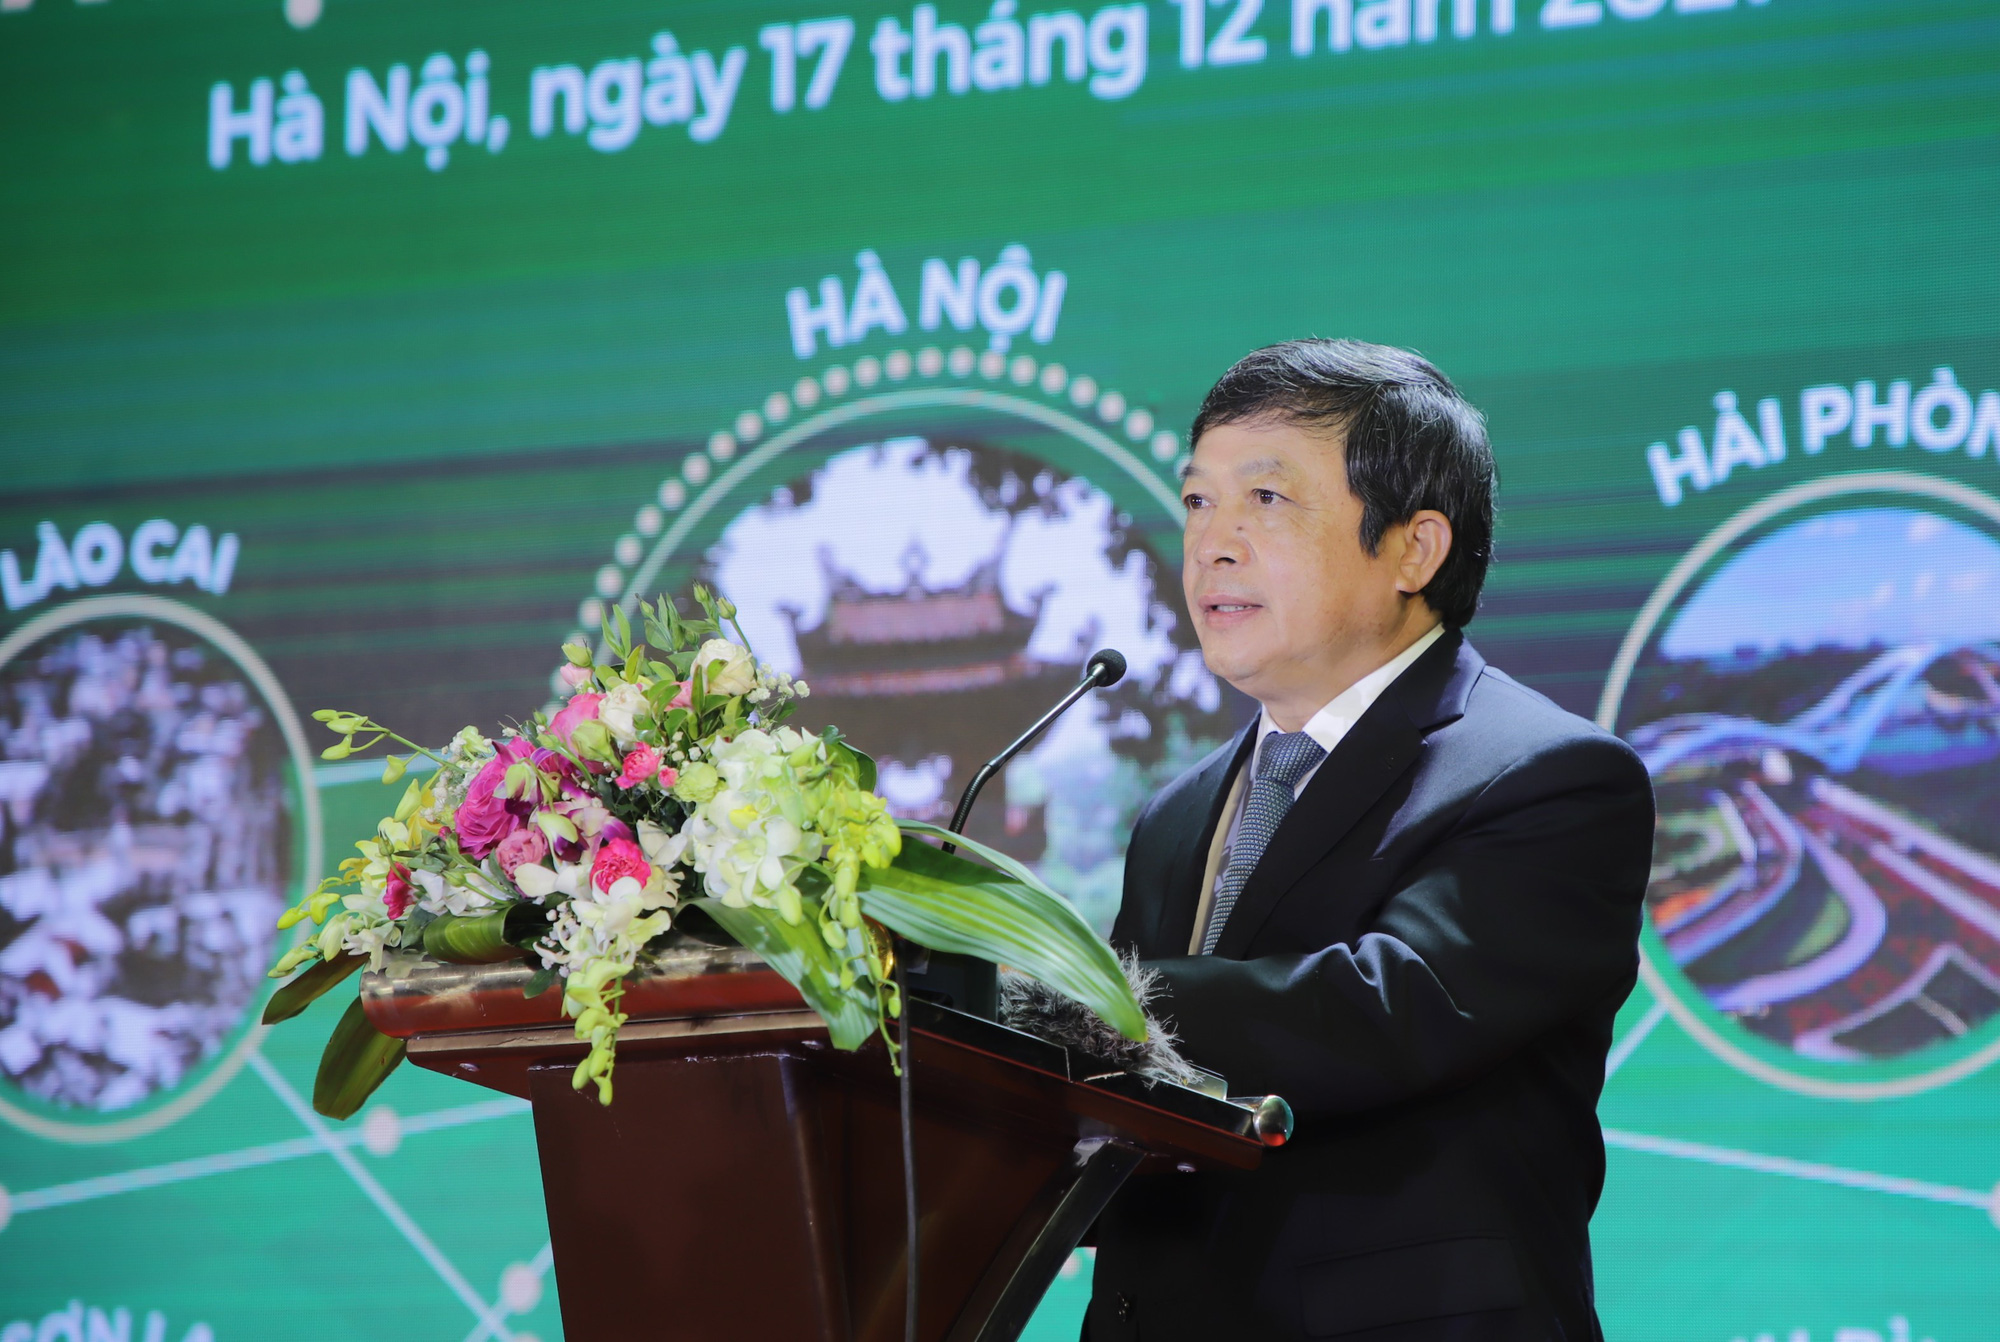 Chính thức thiết lập hành lang du lịch an toàn Hà Nội và 11 địa phương - Ảnh 1.